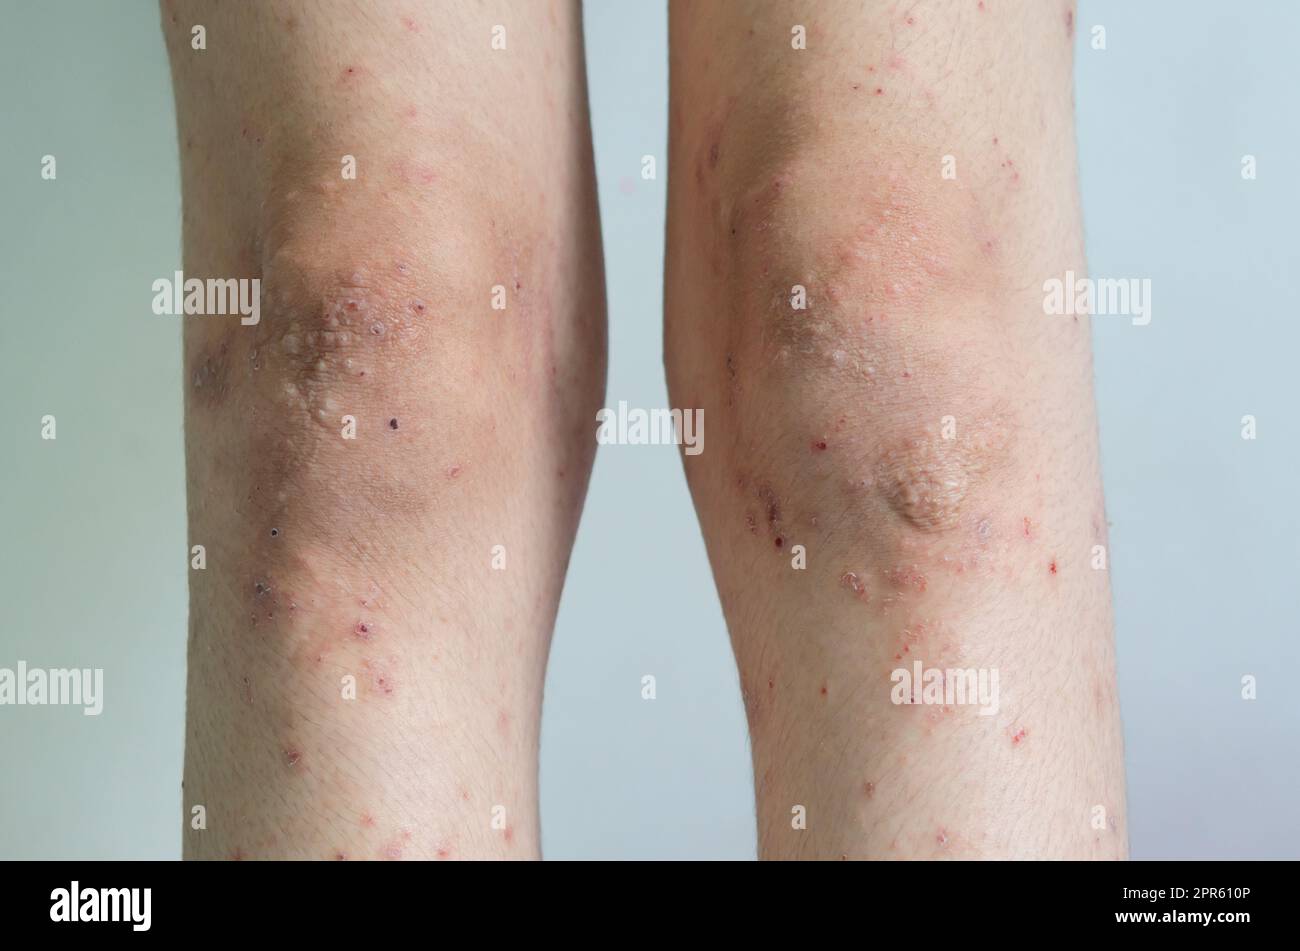 Eruzione cutanea rossa ragazza malattia della pelle causata da allergie a farmaci, cibo, prodotti chimici, sistema immunitario povero nella linfa. Foto Stock